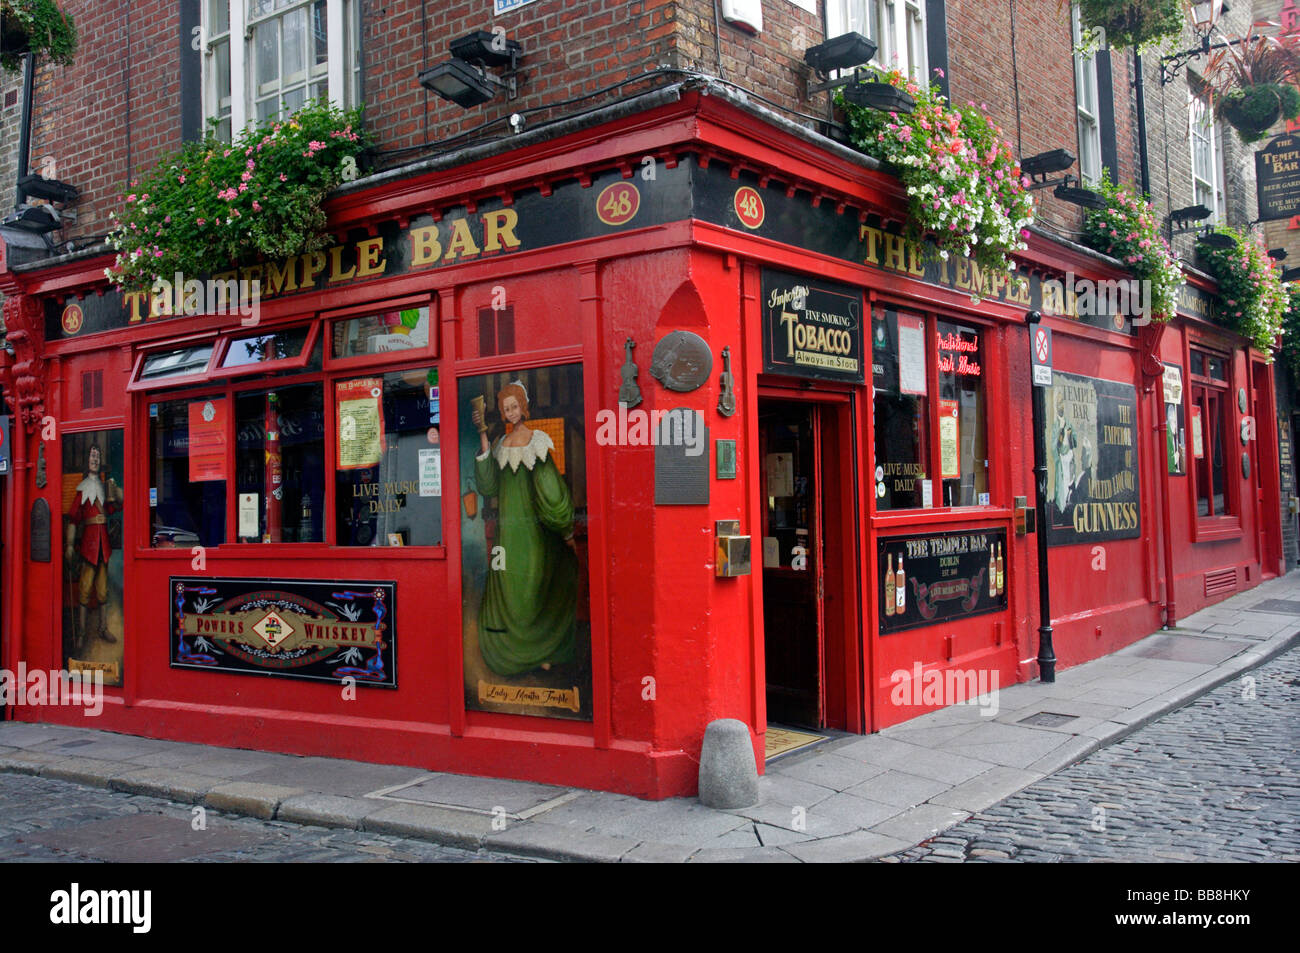 Temple Bar, pub, Temple Bar area, Dublin, Ireland Stock Photo